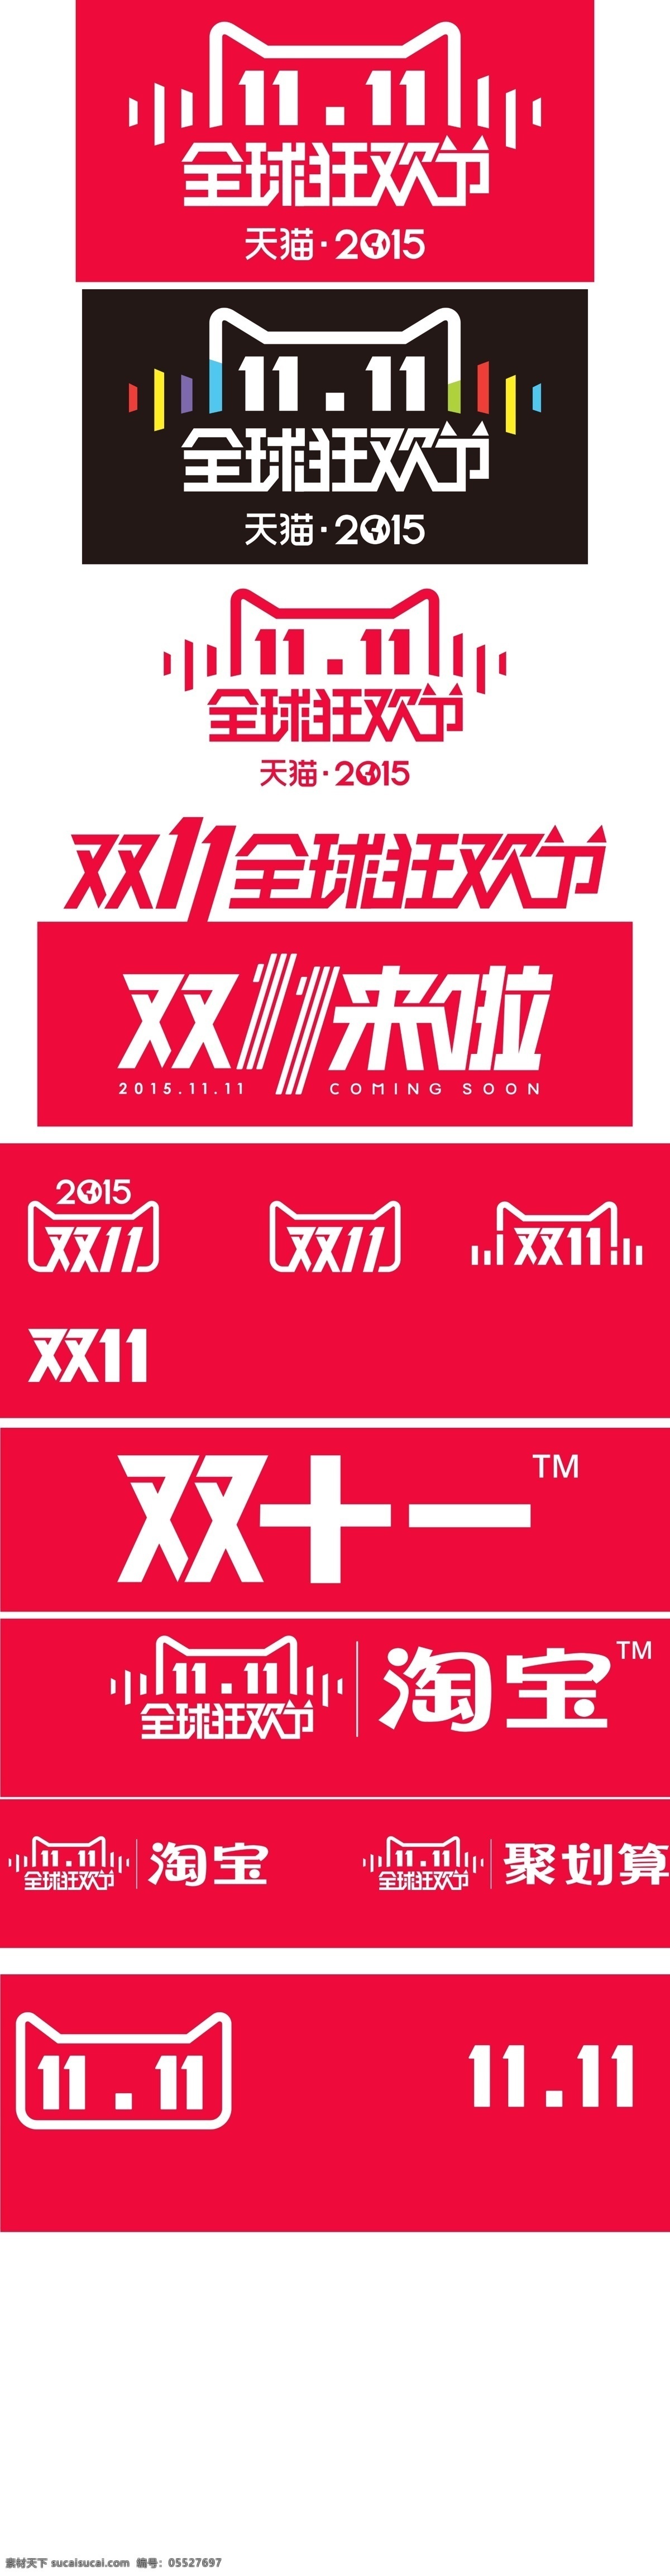 双 logo 淘宝素材 淘宝设计 淘宝模板下载 红色